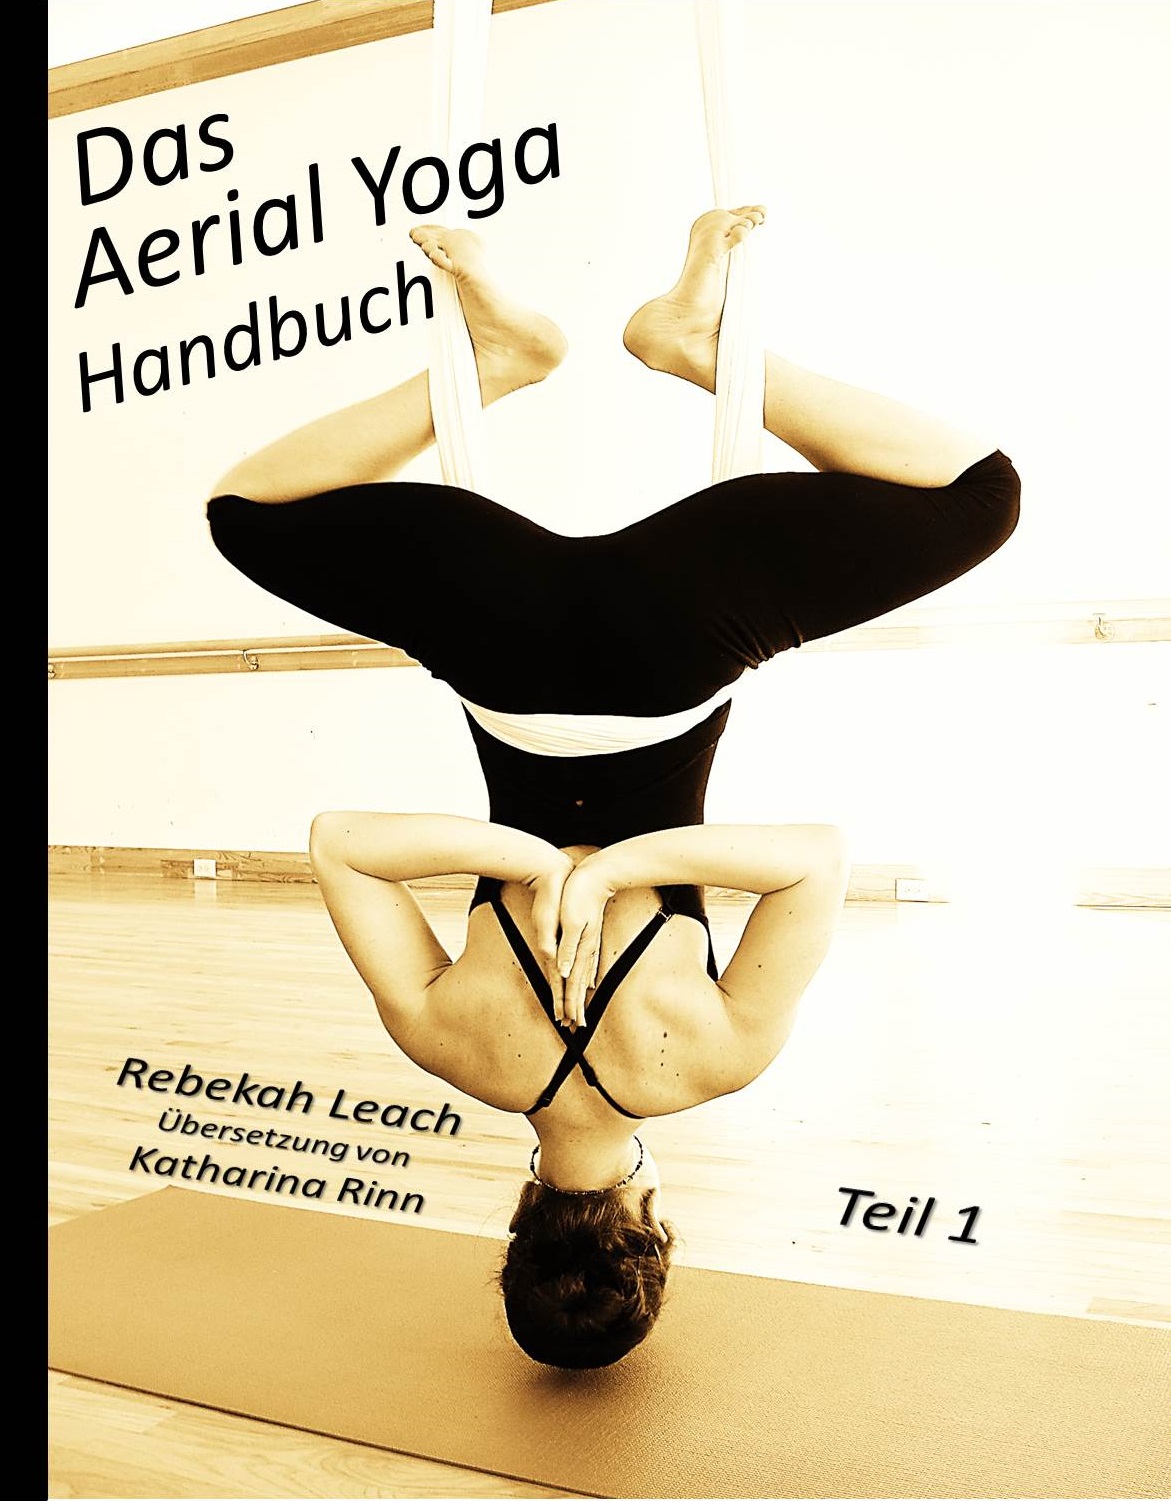 Das Aerial Yoga Handbuch Teil 1 is Here! www.aerialdancing